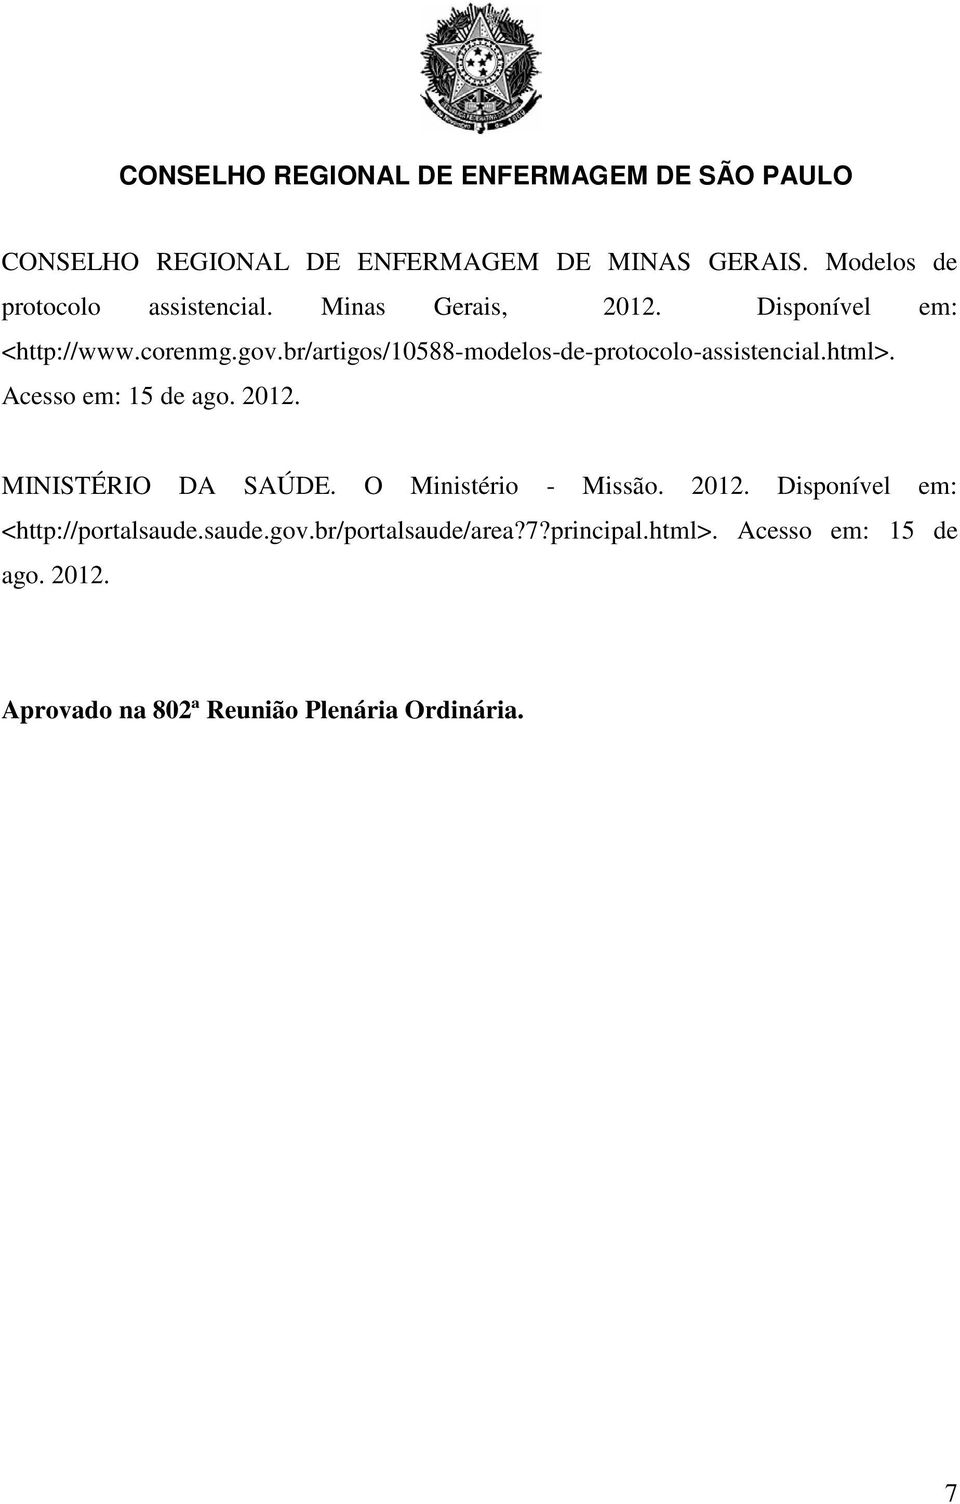 Acesso em: 15 de ago. 2012. MINISTÉRIO DA SAÚDE. O Ministério - Missão. 2012. Disponível em: <http://portalsaude.